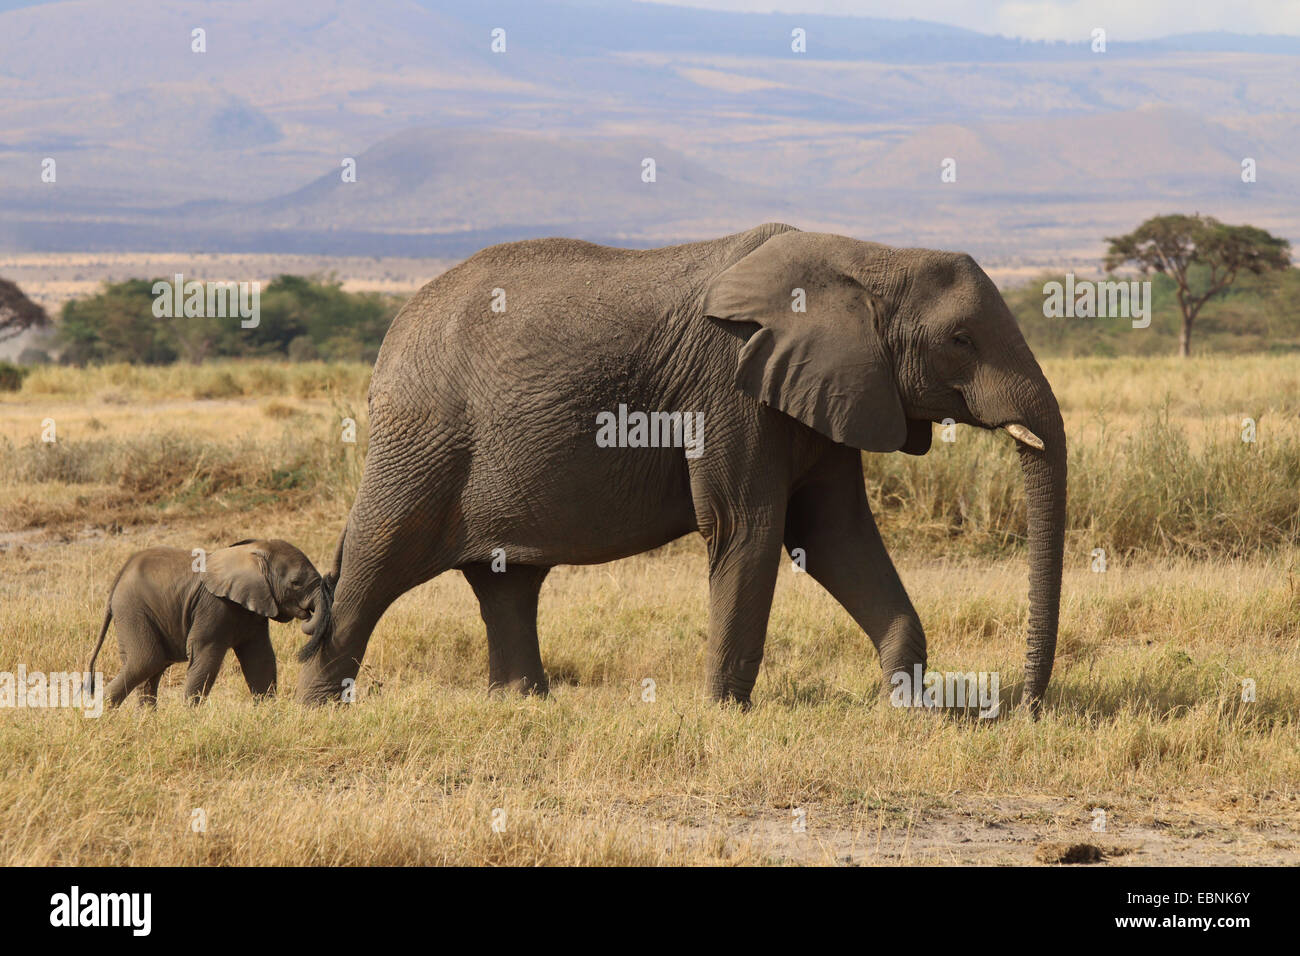 African elephant (Loxodonta africana), female and baby, Kenya, Amboseli National Park Stock Photo